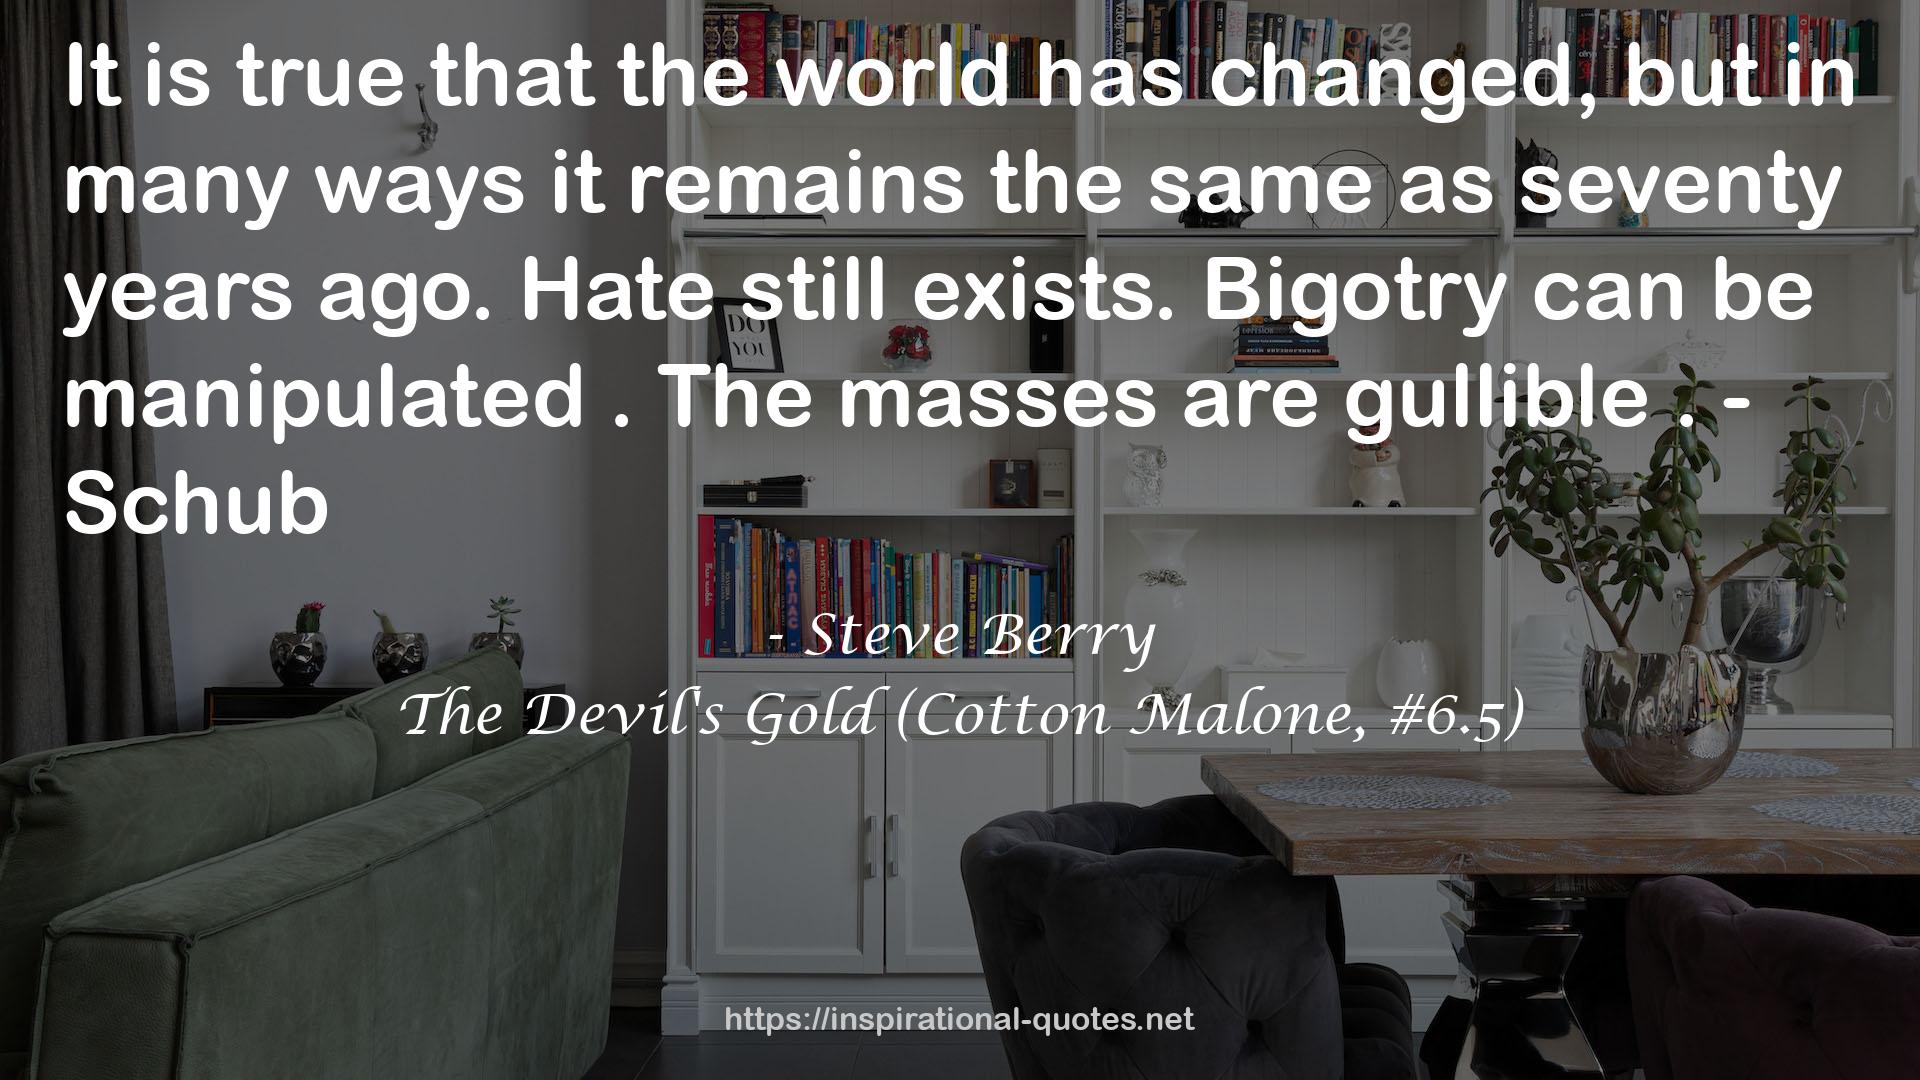 The Devil's Gold (Cotton Malone, #6.5) QUOTES